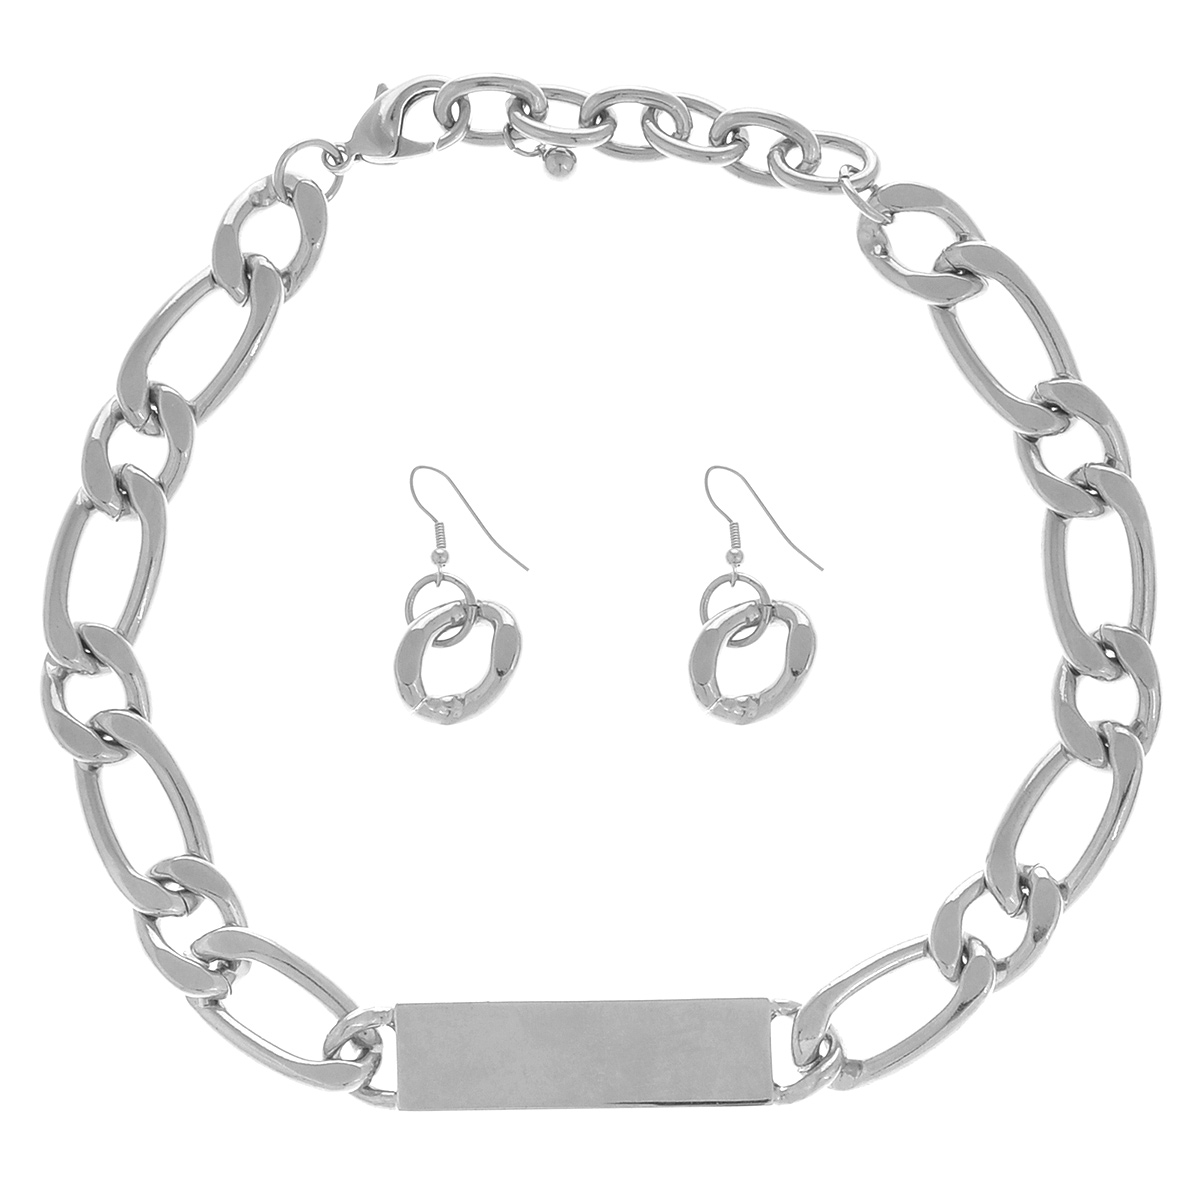 Комплект украшений Taya: колье, серьги, цвет: серебристый. T-B-5758